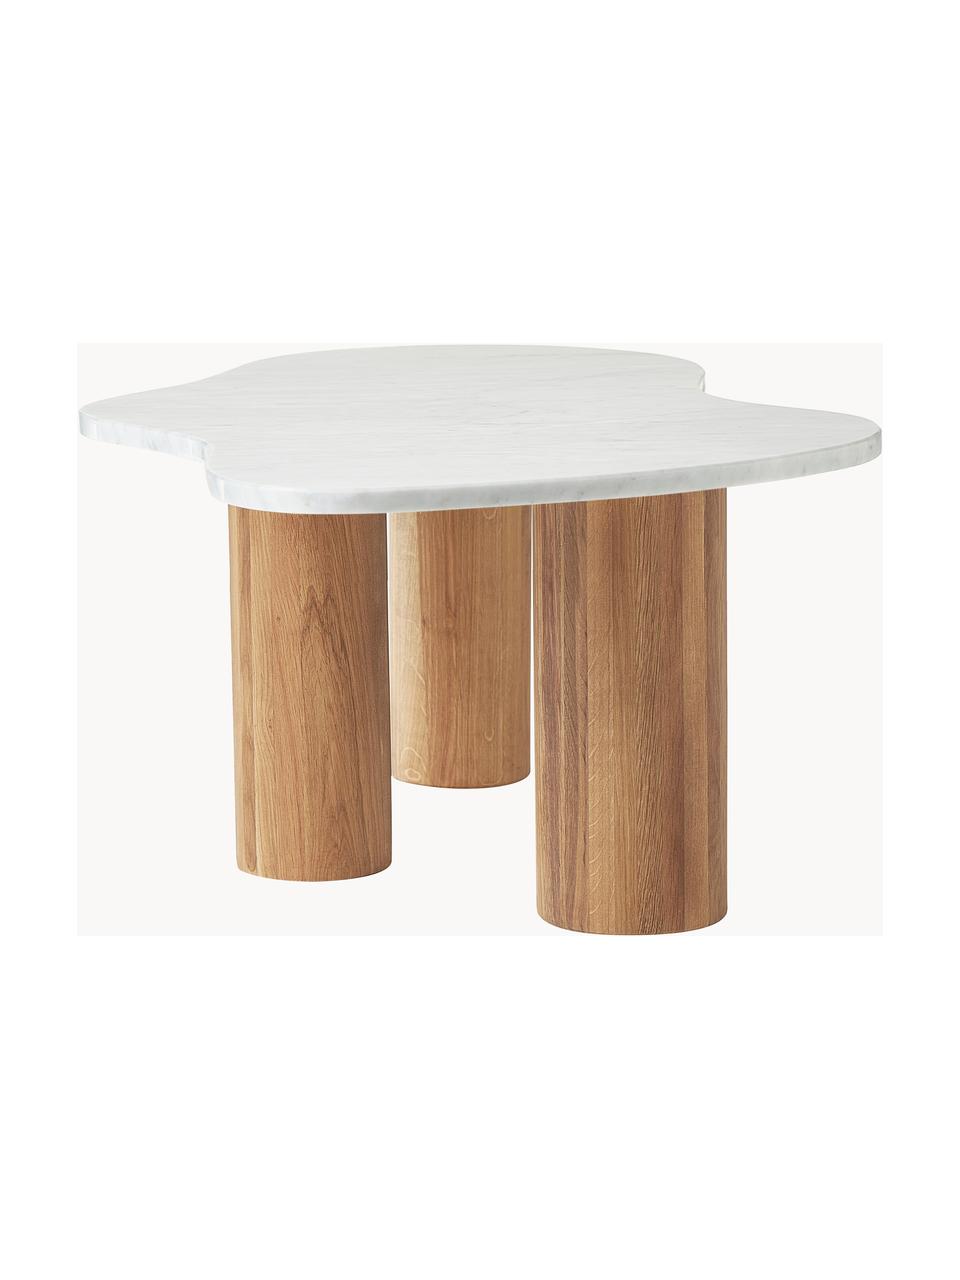 Marmor-Couchtisch Naruto in organischer Form, Tischplatte: Marmor, Beine: Eichenholz, Eichenholz, Weiss, marmoriert, B 90 x T 59 cm